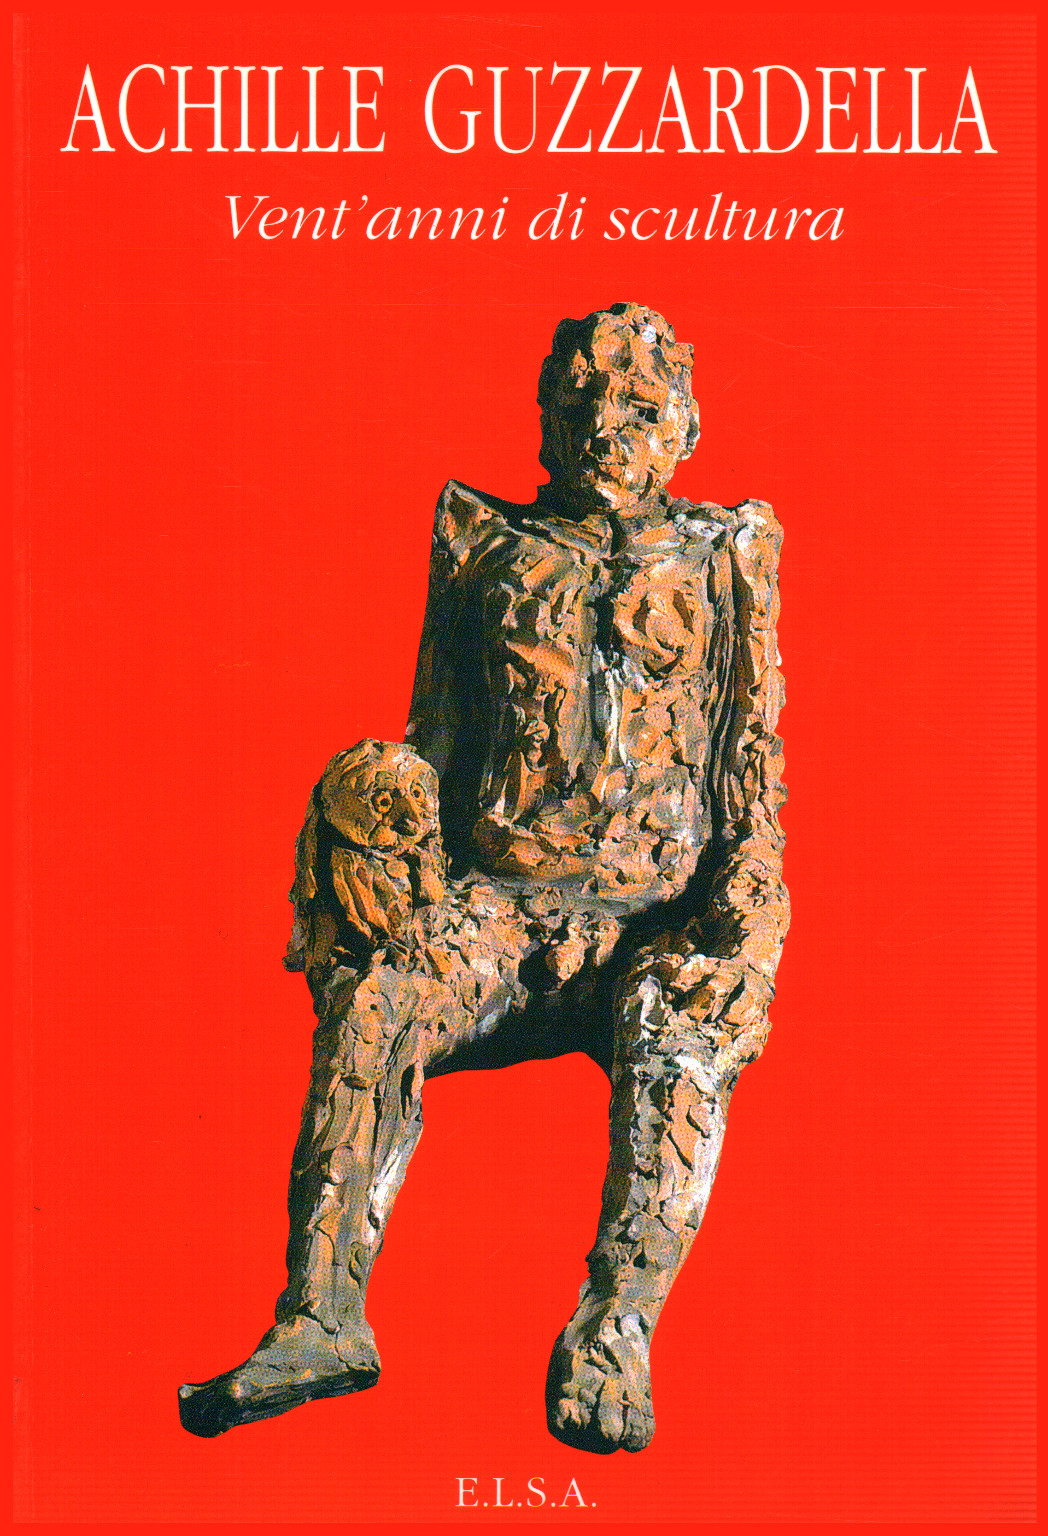 Achilles Guzzardella. Twenty years of sculpture, s.a.